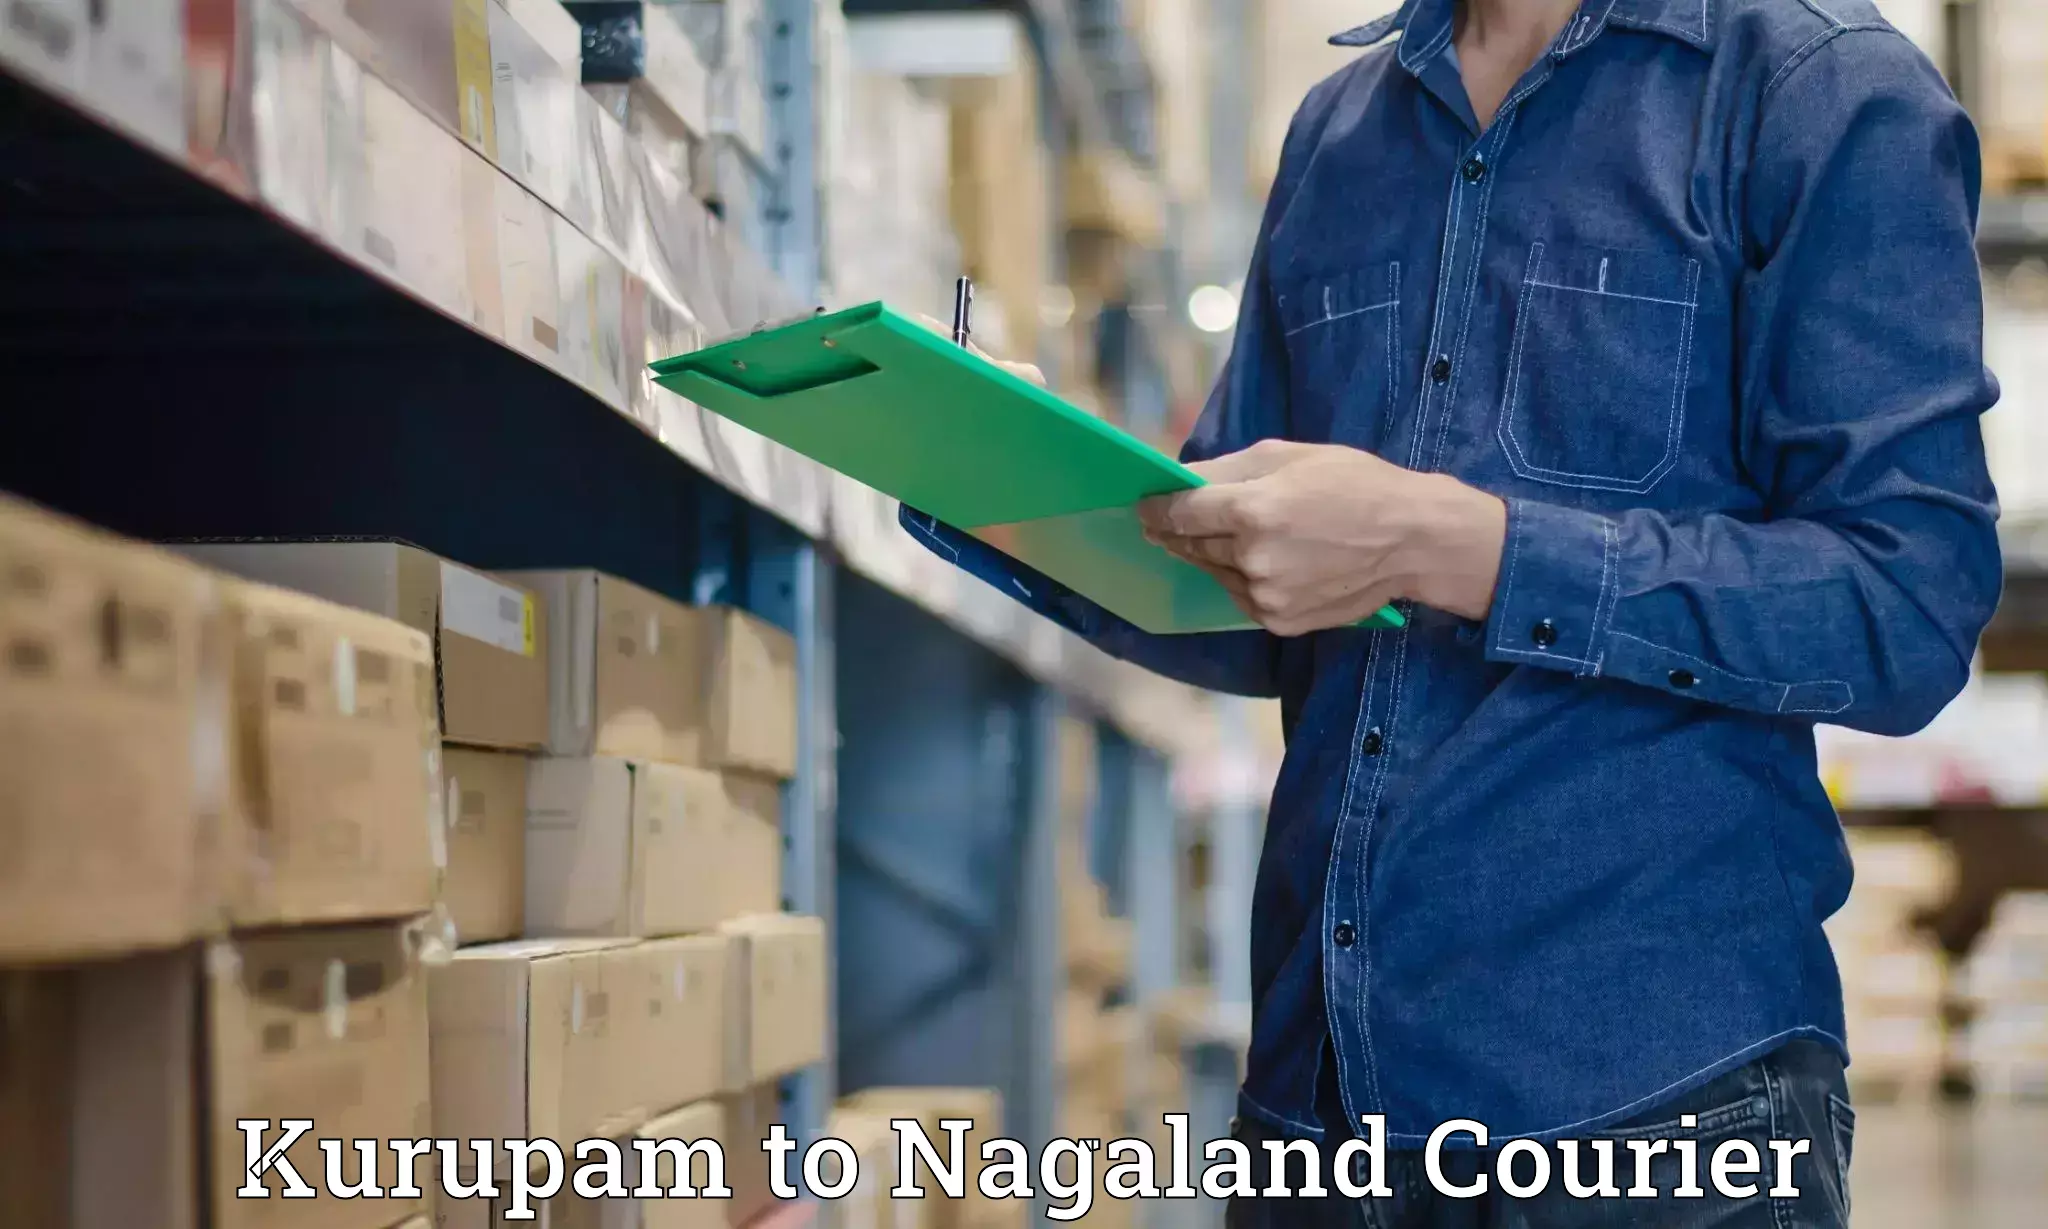 24/7 courier service Kurupam to NIT Nagaland